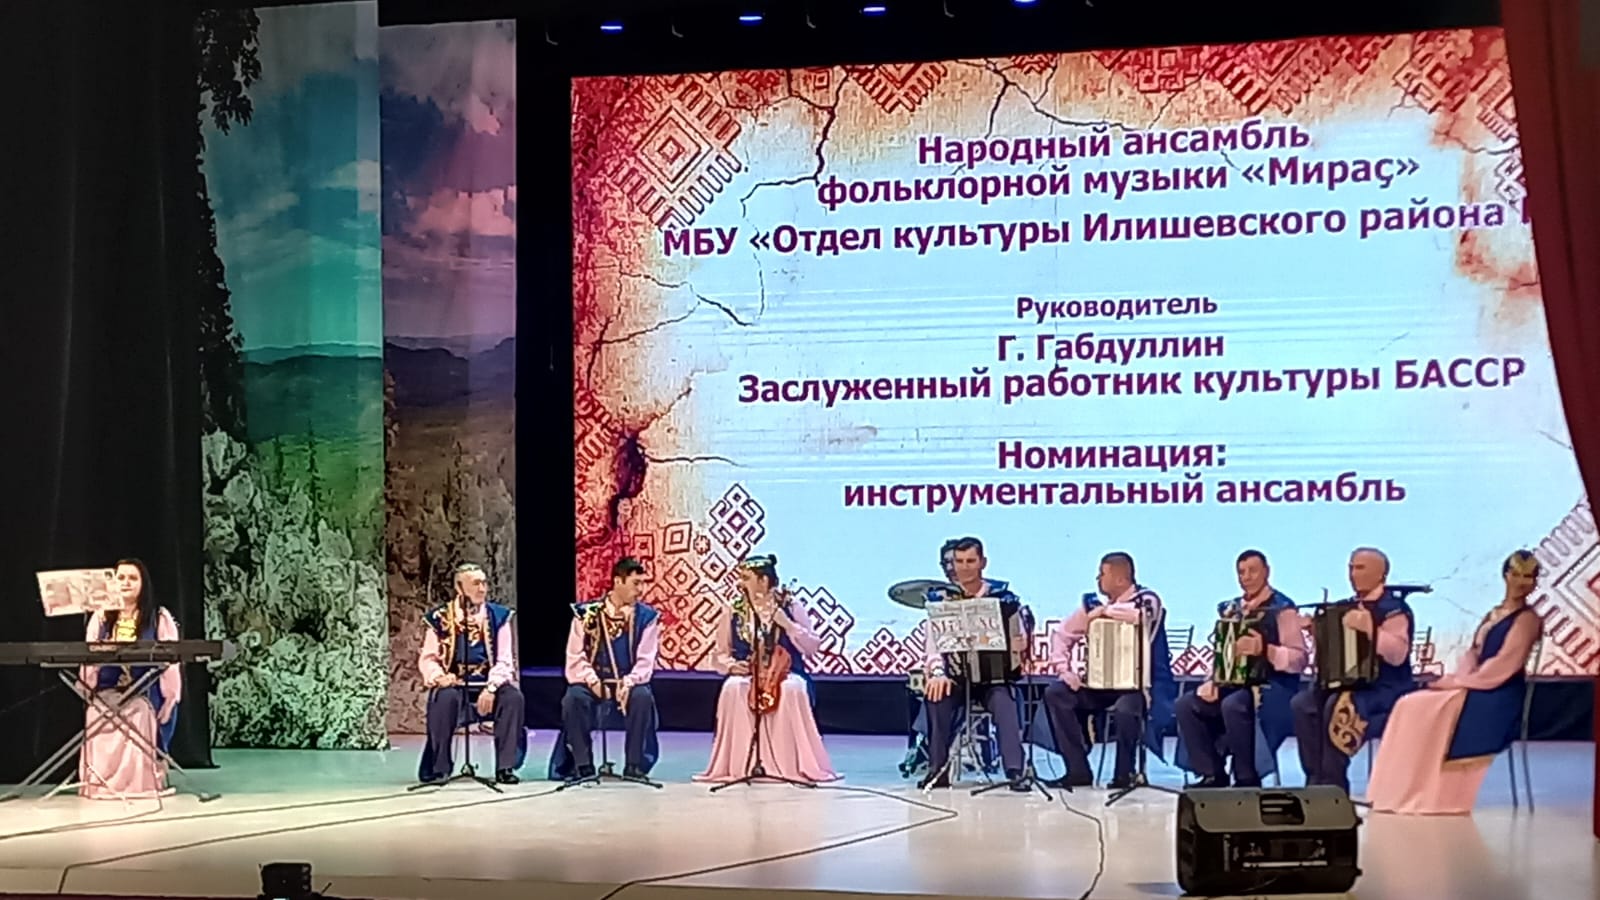 Определены победители Открытого многожанрового фестиваля башкирской этнической культуры и современного искусства «Ауаз»